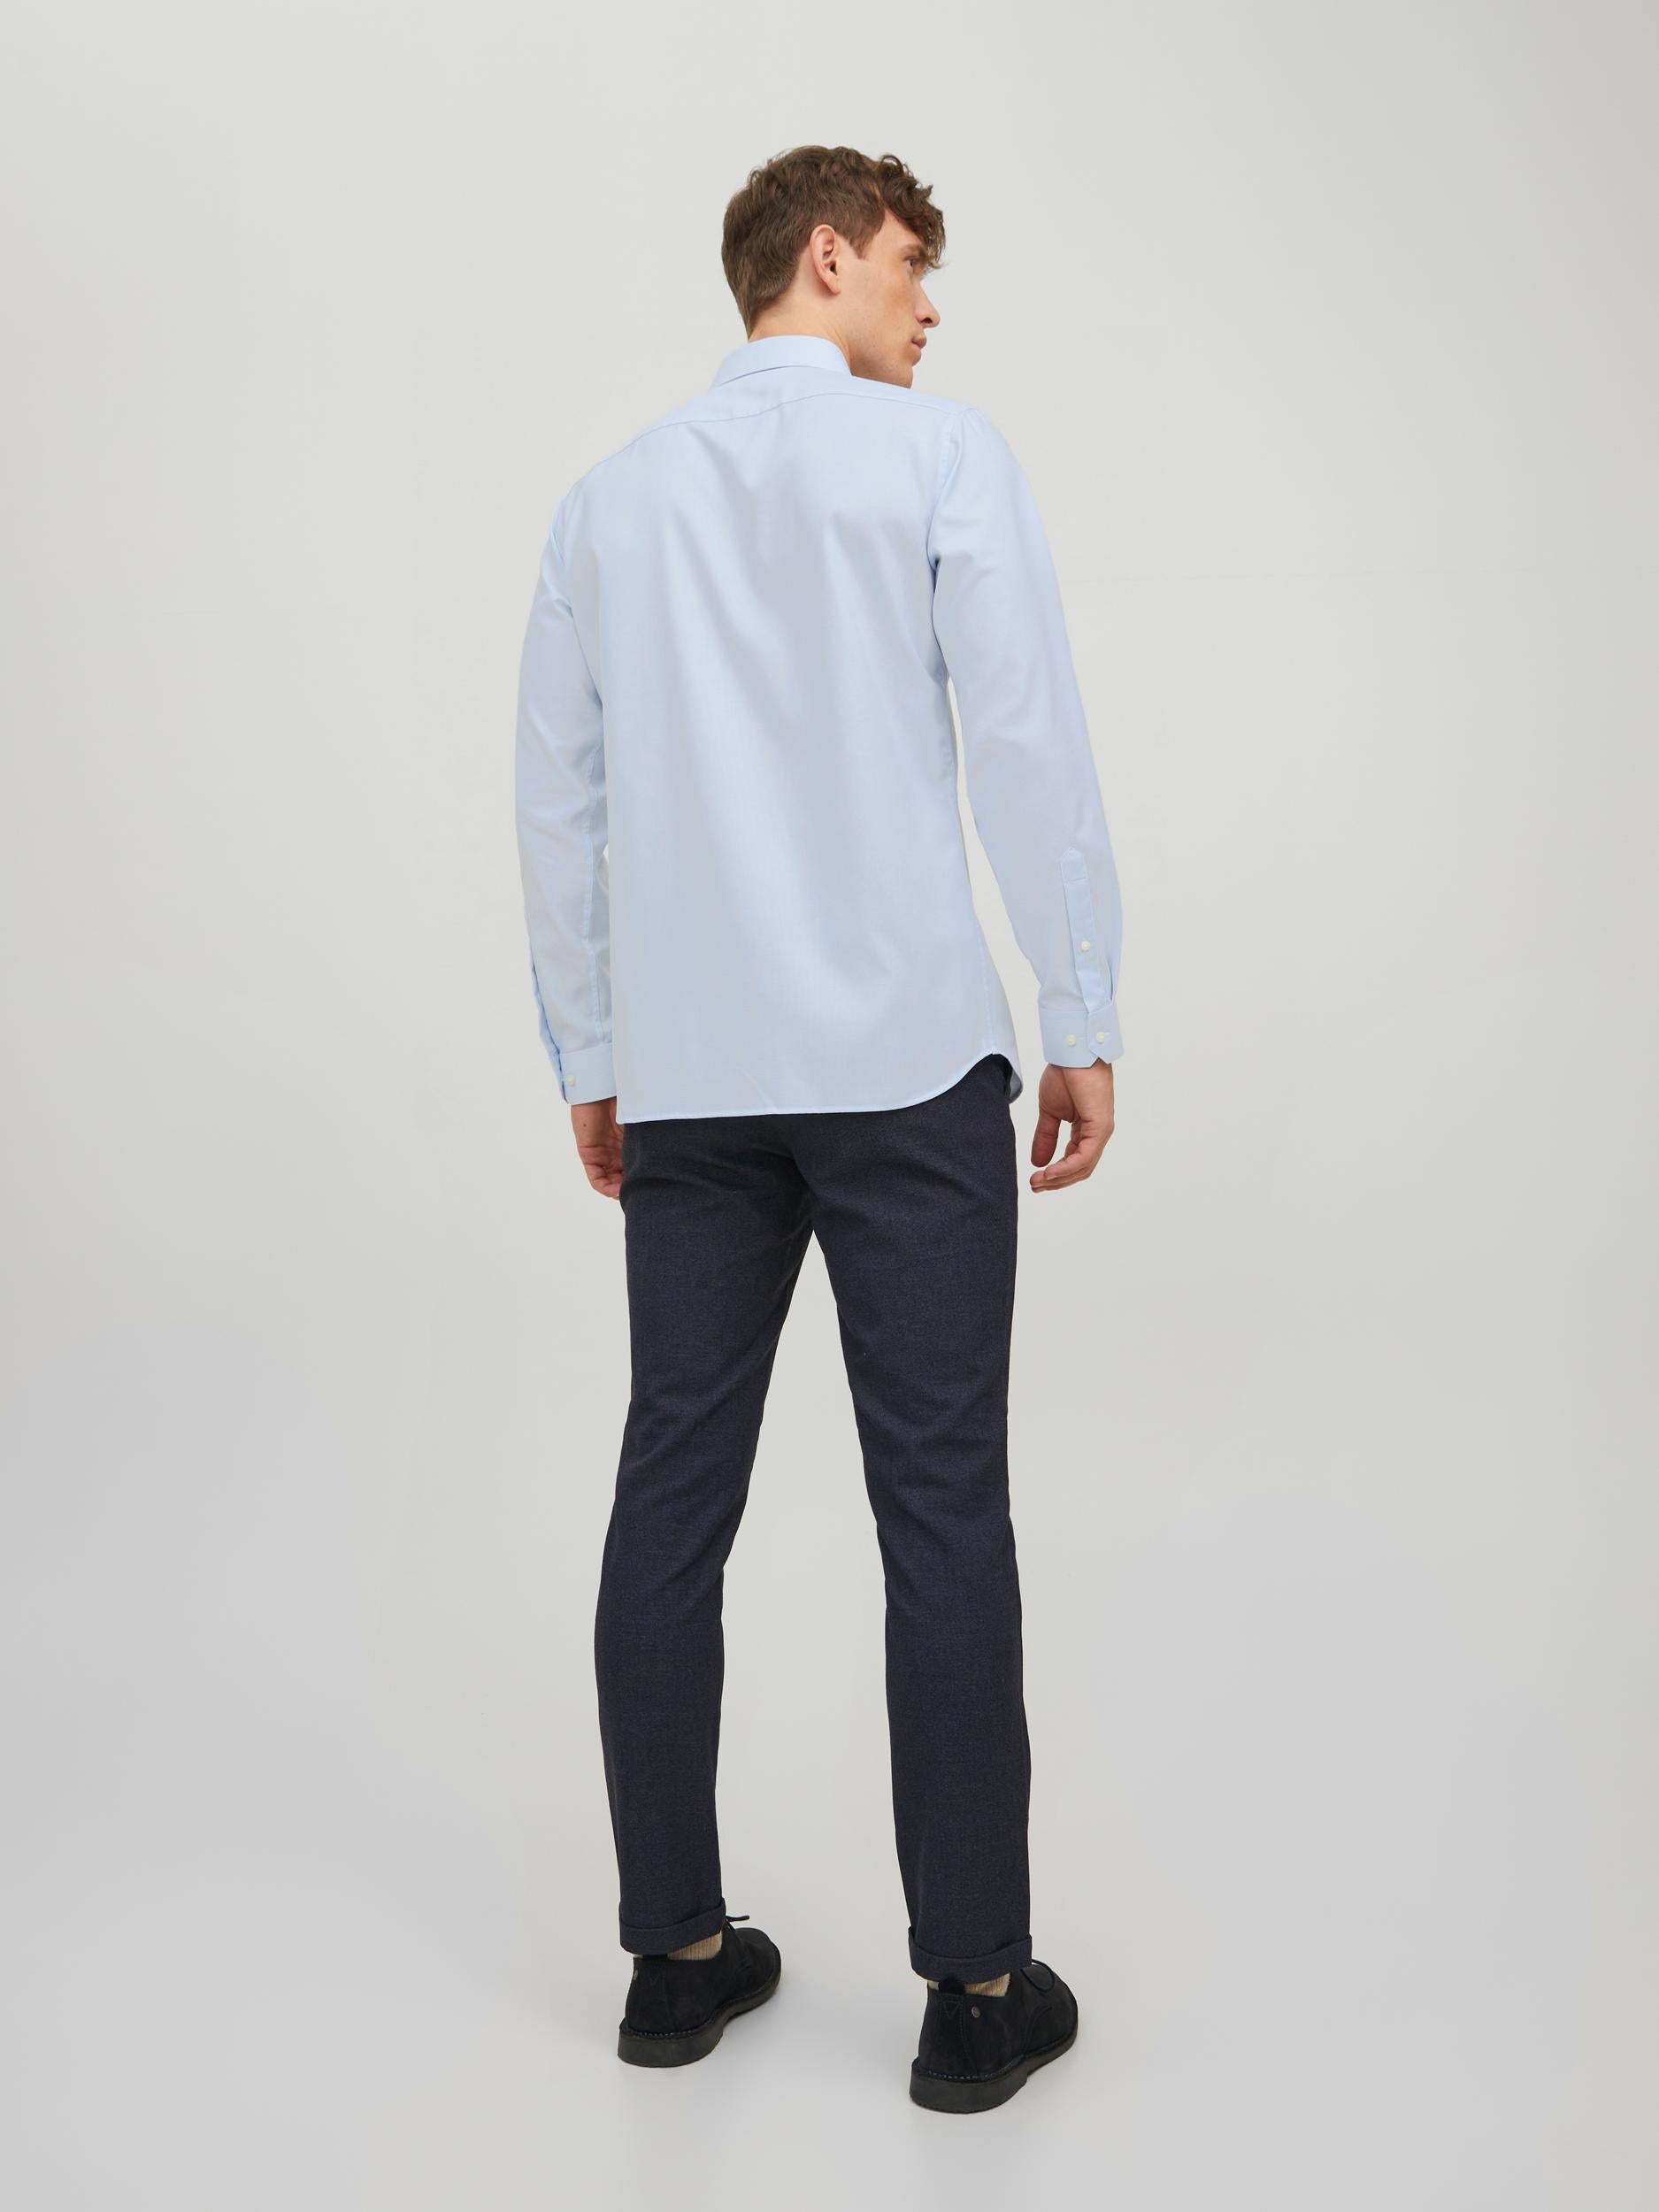 Men's Parker Cashmere Blue Shirt-Back View